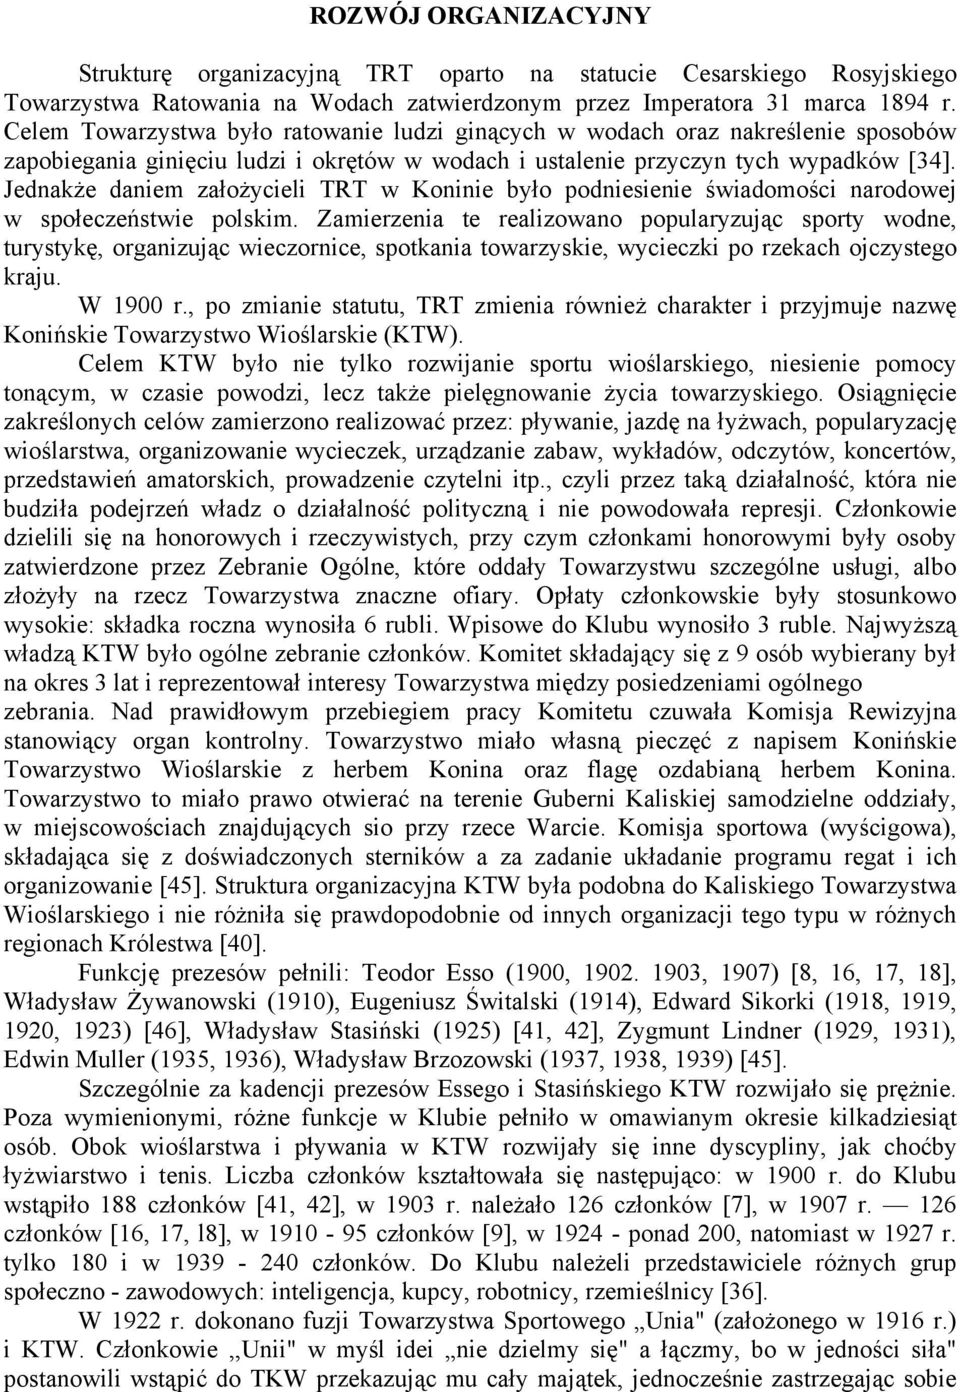 Jednakże daniem założycieli TRT w Koninie było podniesienie świadomości narodowej w społeczeństwie polskim.